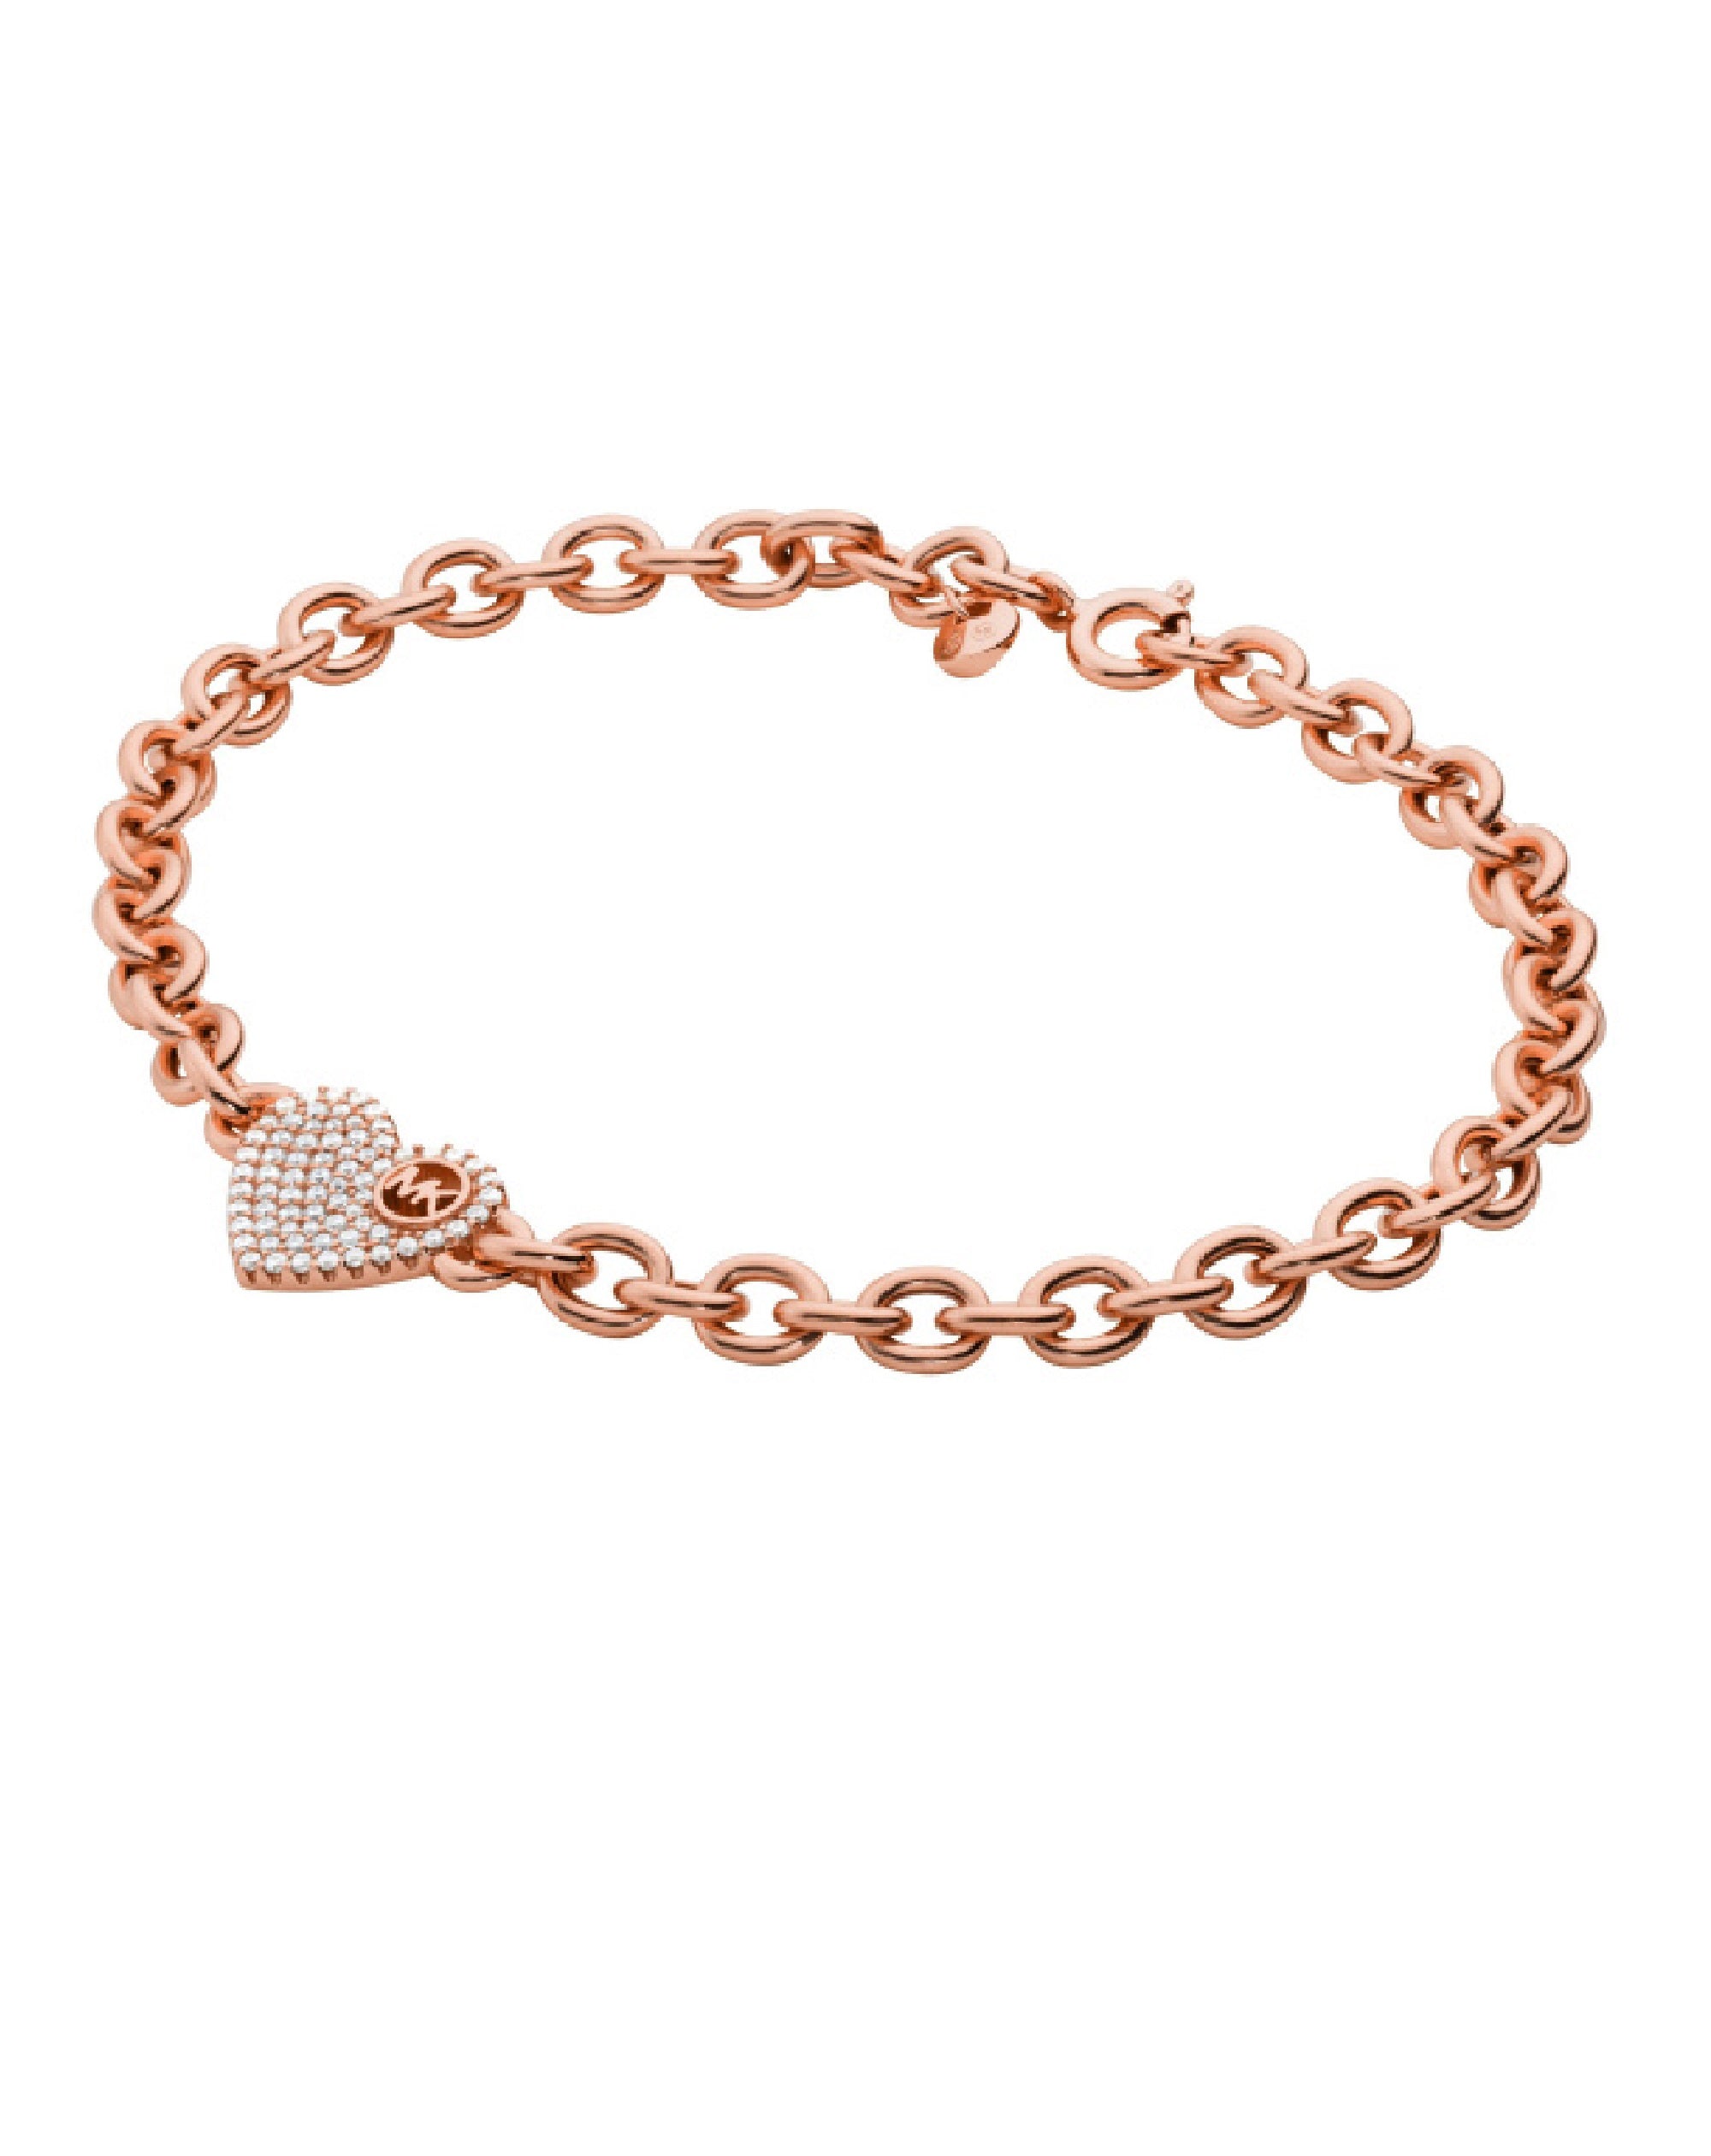 Designer Bracelets  Gold Silver  Rose Gold  Michael Kors